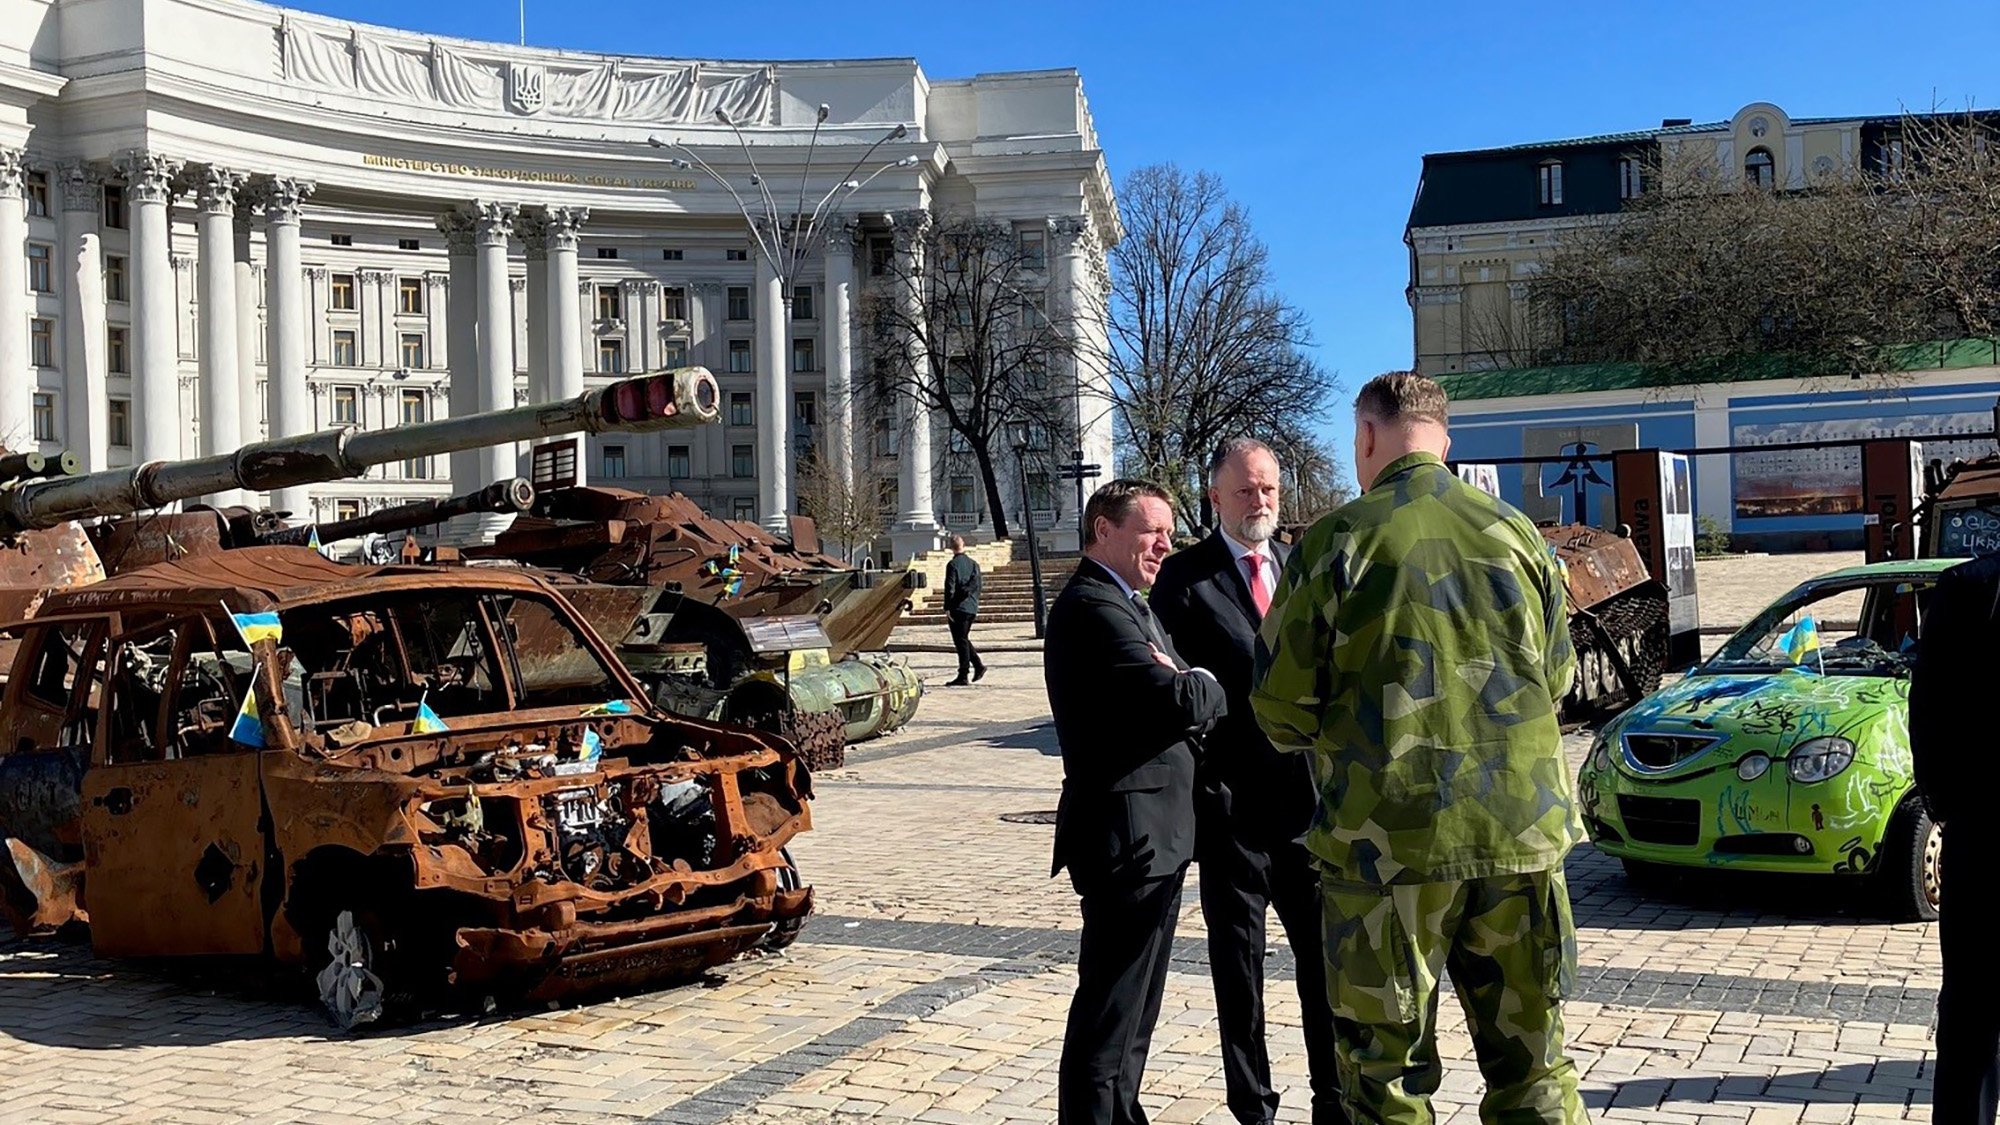 Generaldirektör Göran Mårtensson samtalar med Sveriges ambassadör i Ukraina, Martin Åberg, och försvarsattché Hans Granlund på Mykhailivska (Saint Michael's) torg i Kiev.